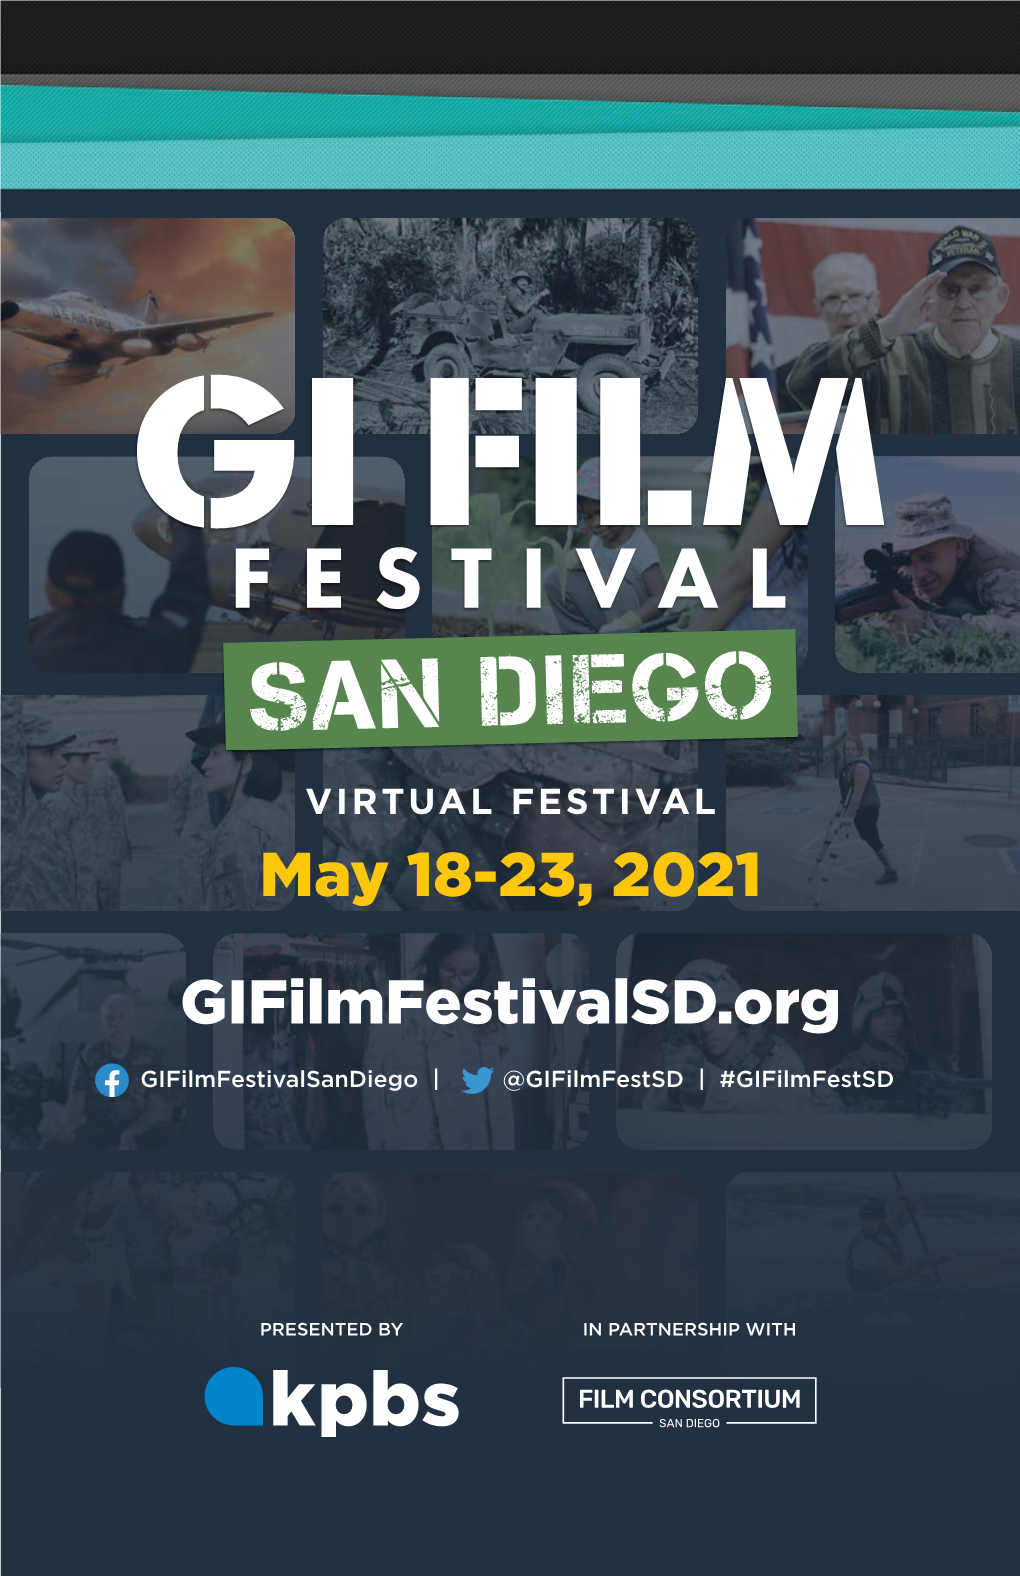 May 18-23, 2021 Gifilmfestivalsd.Org